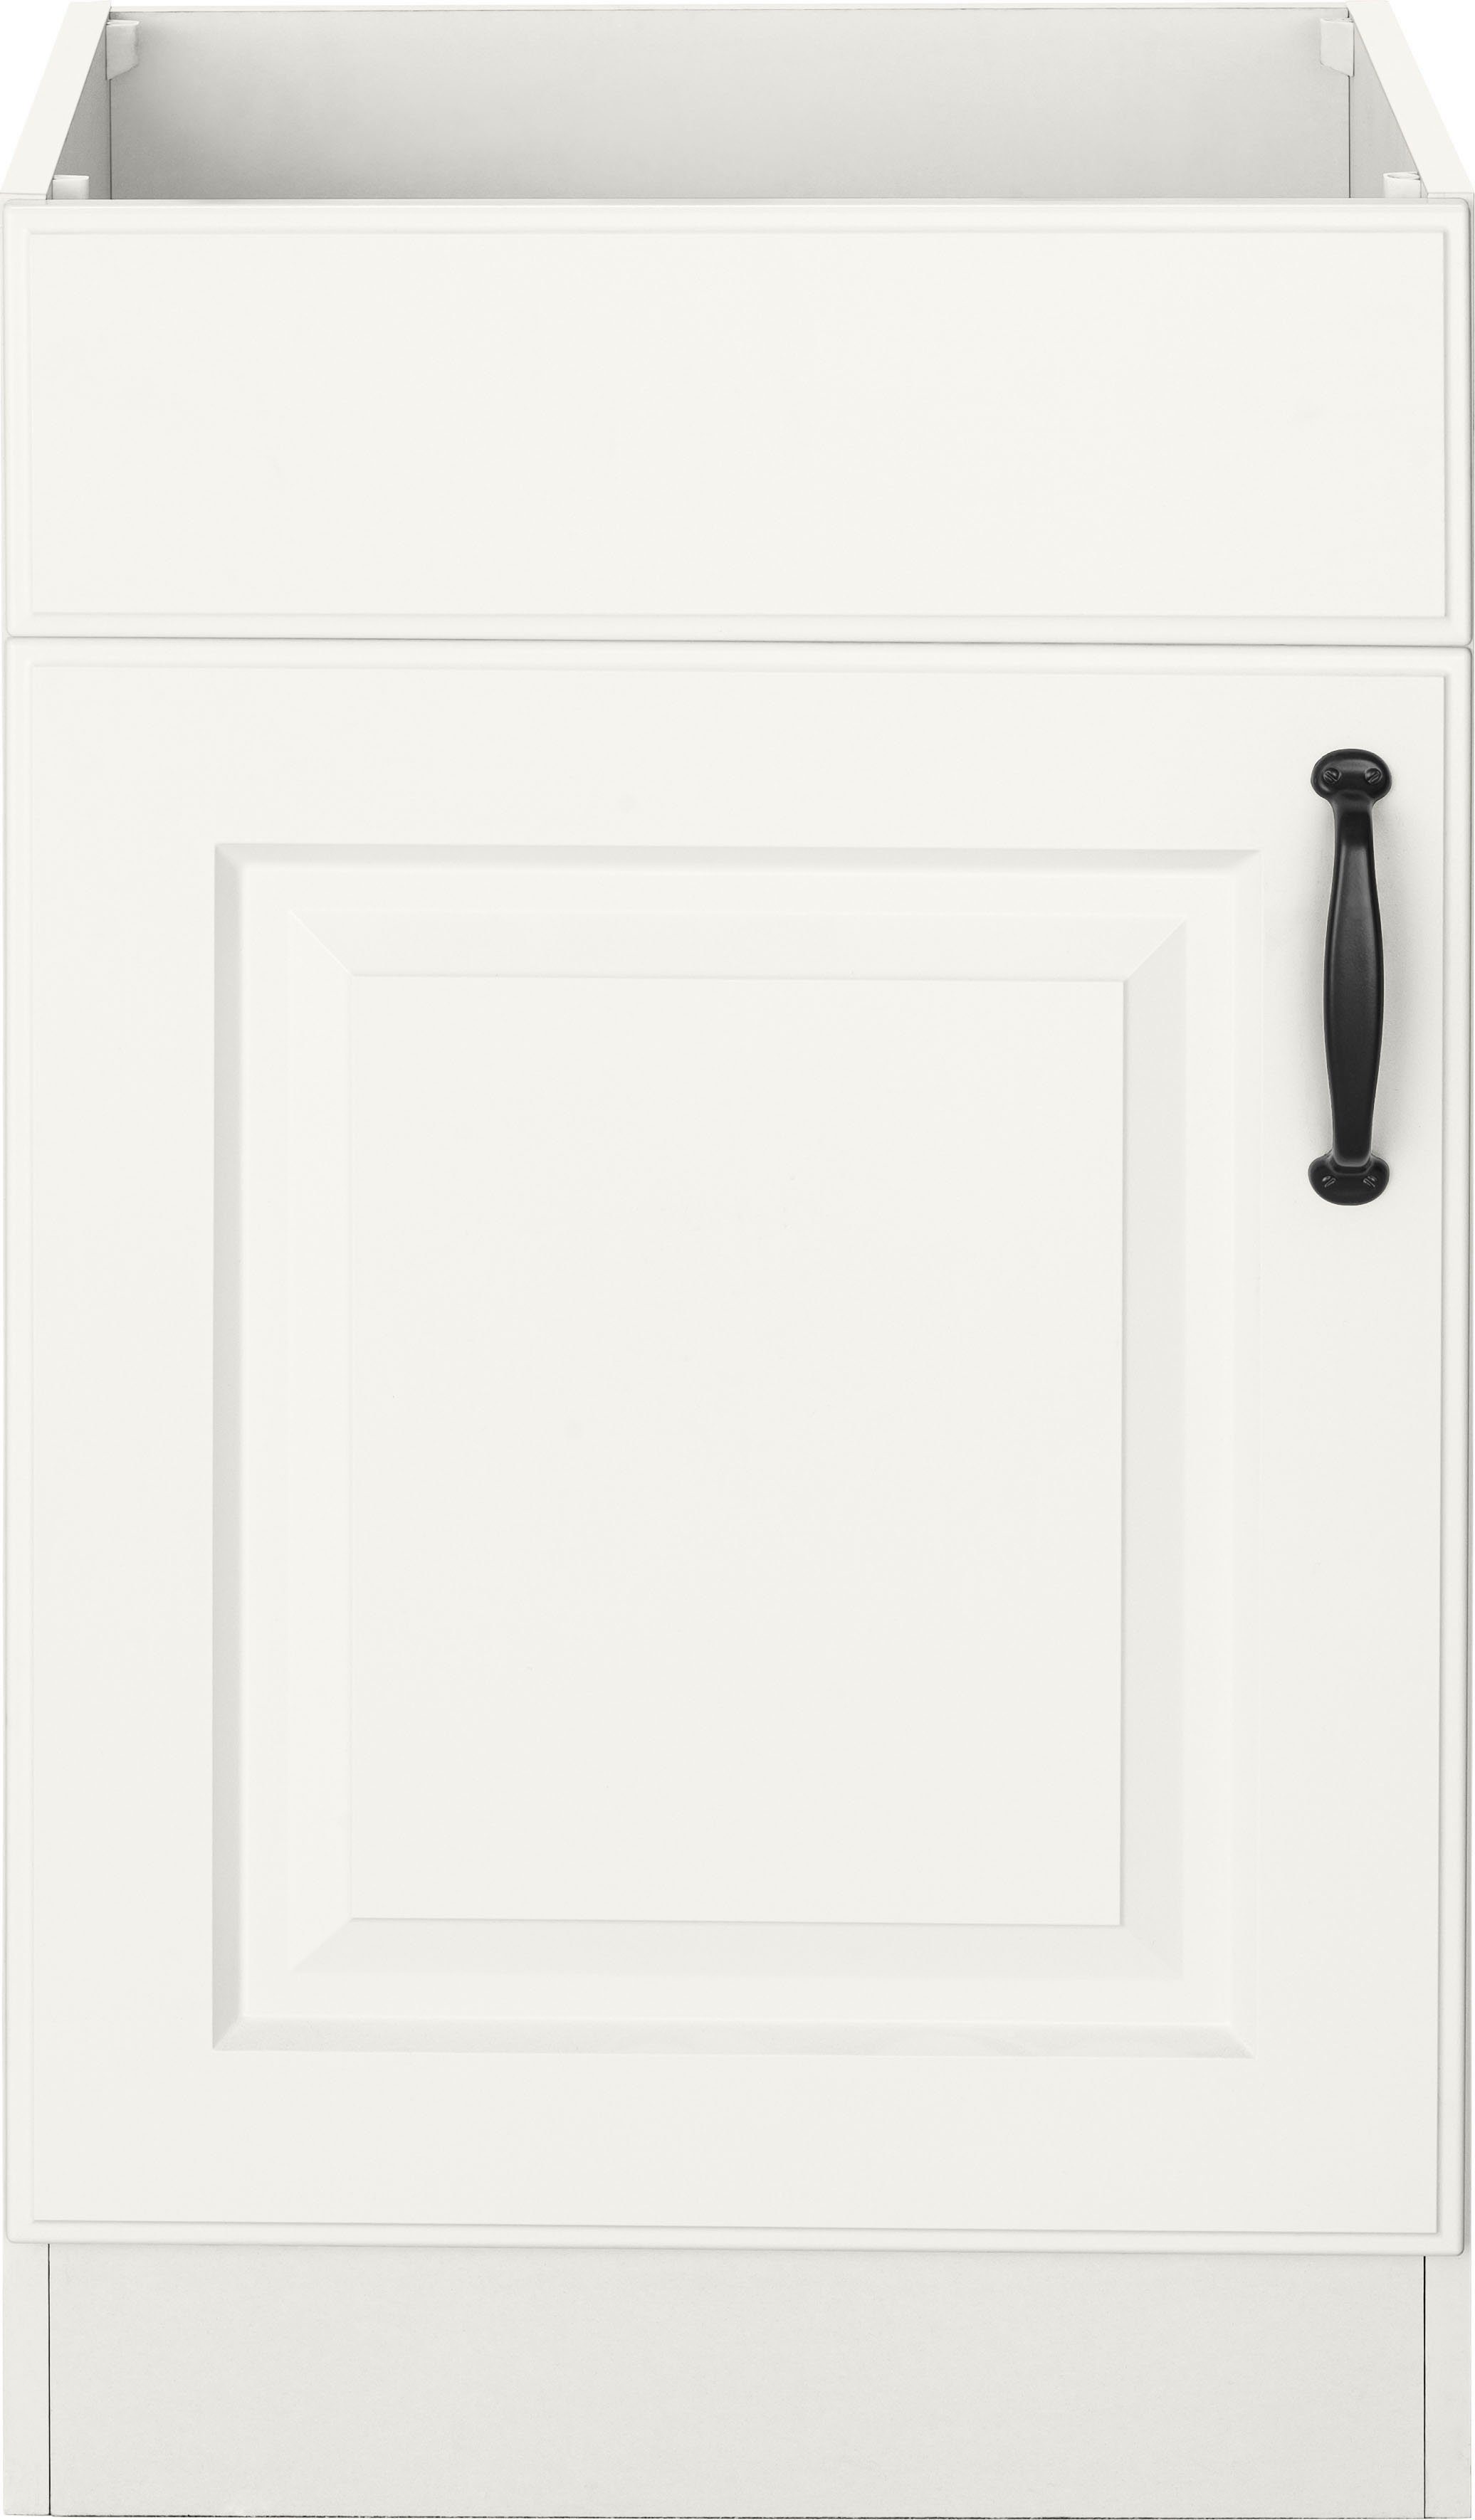 wiho Küchen Spülenschrank Erla 50 cm breit mit Kassettenfront, ohne Arbeitsplatte Weiß/Weiß | Weiß